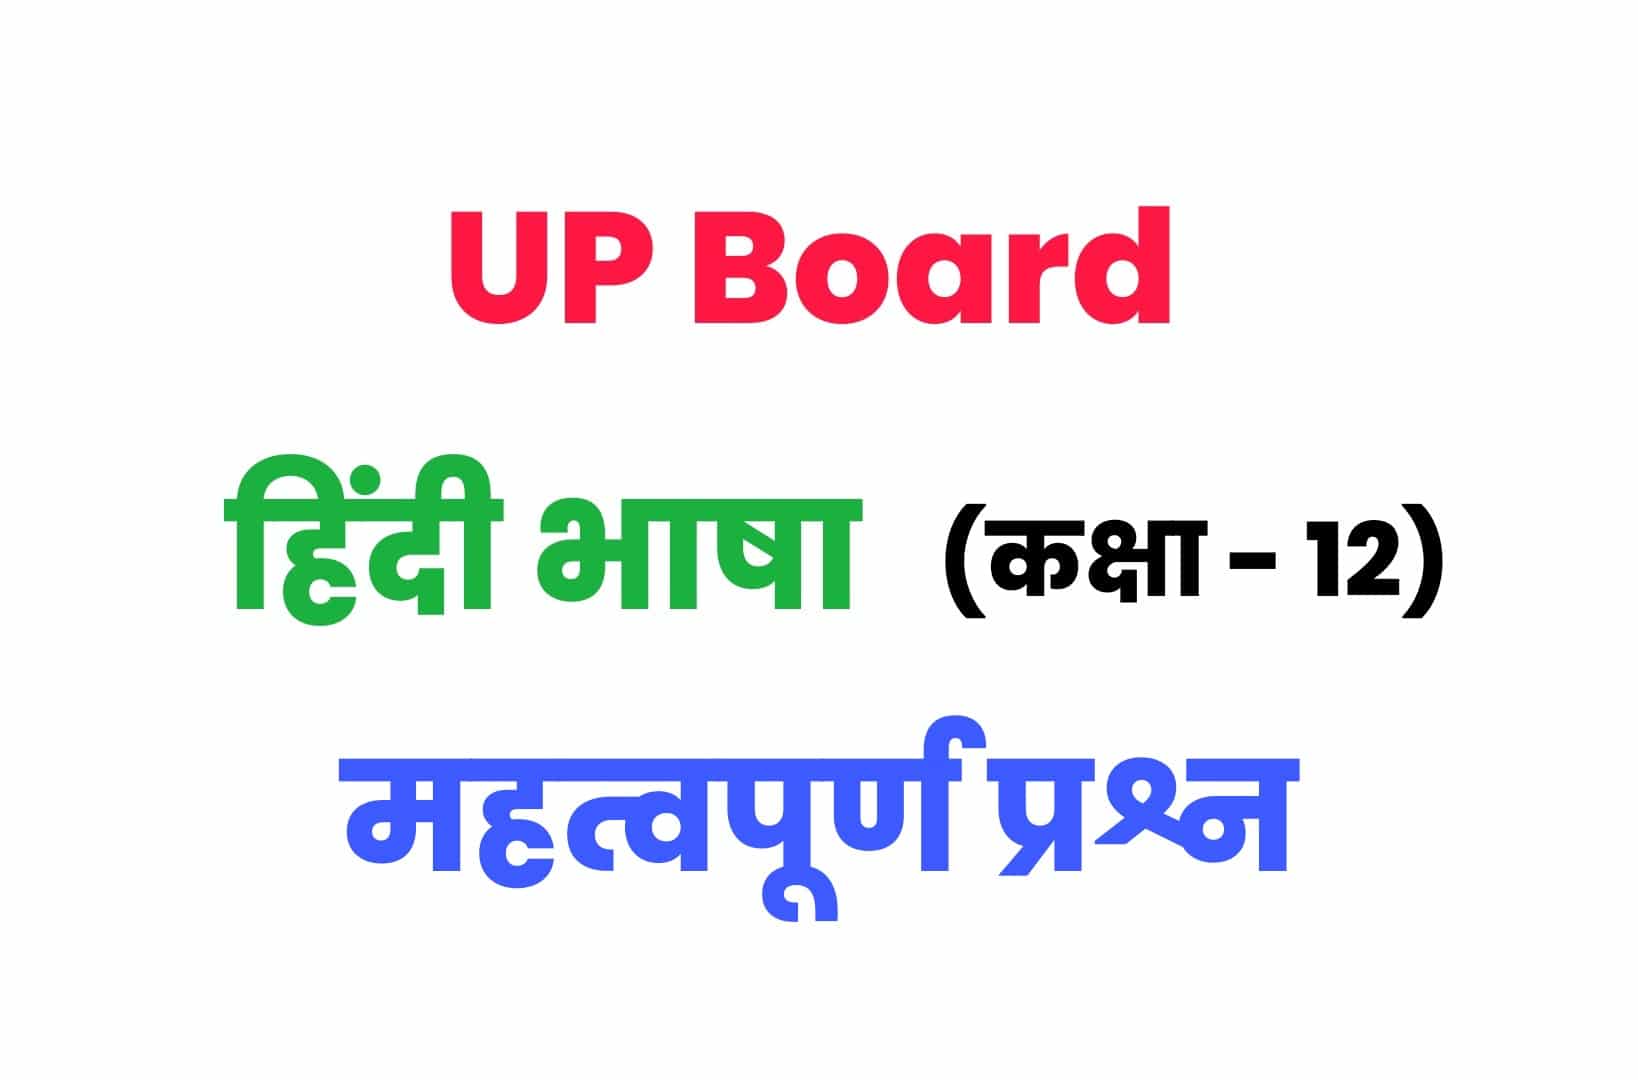 UP Board Class 12th हिंदी भाषा के महत्वपूर्ण प्रश्न : कक्षा 12 के लेखक एवं उनकी रचनाओं से जुड़े महत्वपूर्ण प्रश्नों को अवश्य देखें